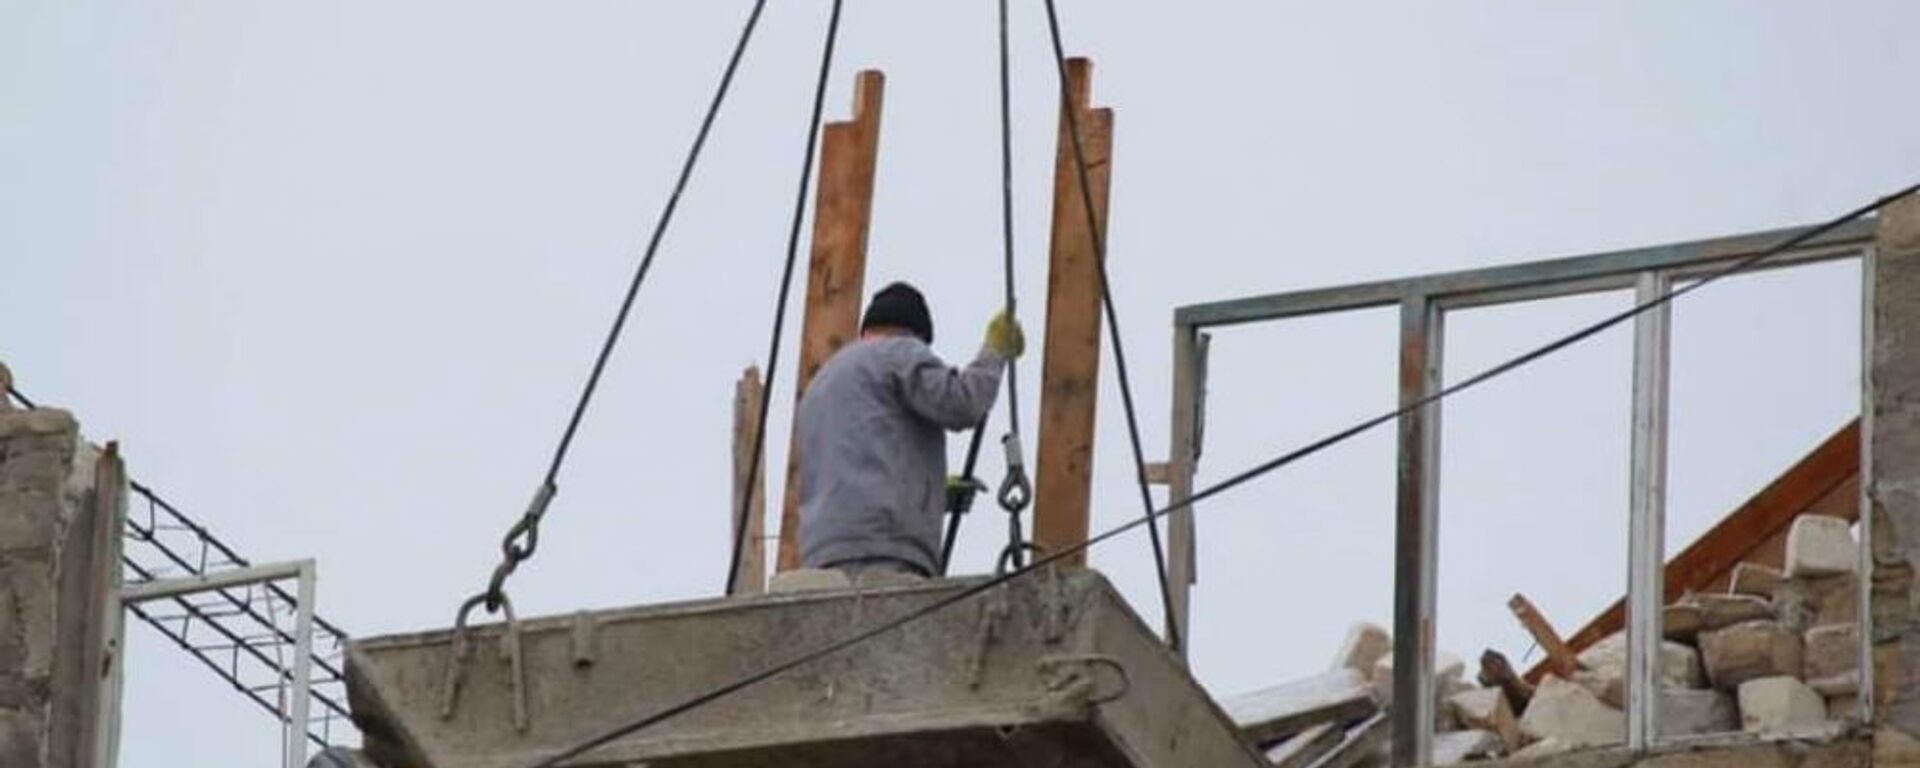 Ремонтные работы по восстановлению гражданских объектов после войны (9 января 3032). Карабах - Sputnik Армения, 1920, 12.05.2021